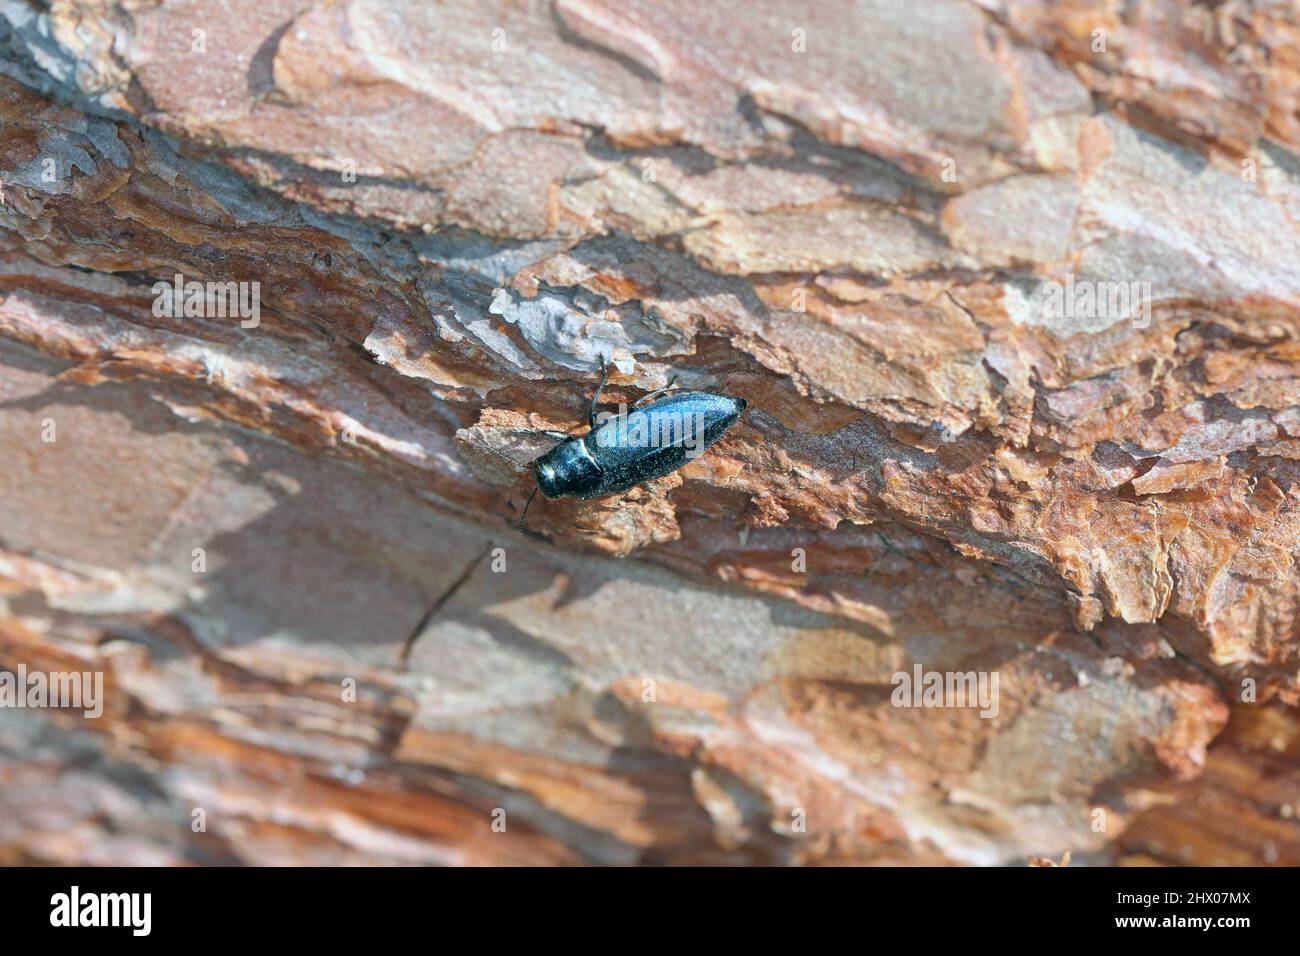 Coléoptère en pierres d'acier Phaenops cyanoa sur l'écorce de pin. C'est un ravageur de pins de la famille des Buprestidae connu sous le nom de coléoptères de bijoux ou de bois métallique-ennuyeux Banque D'Images